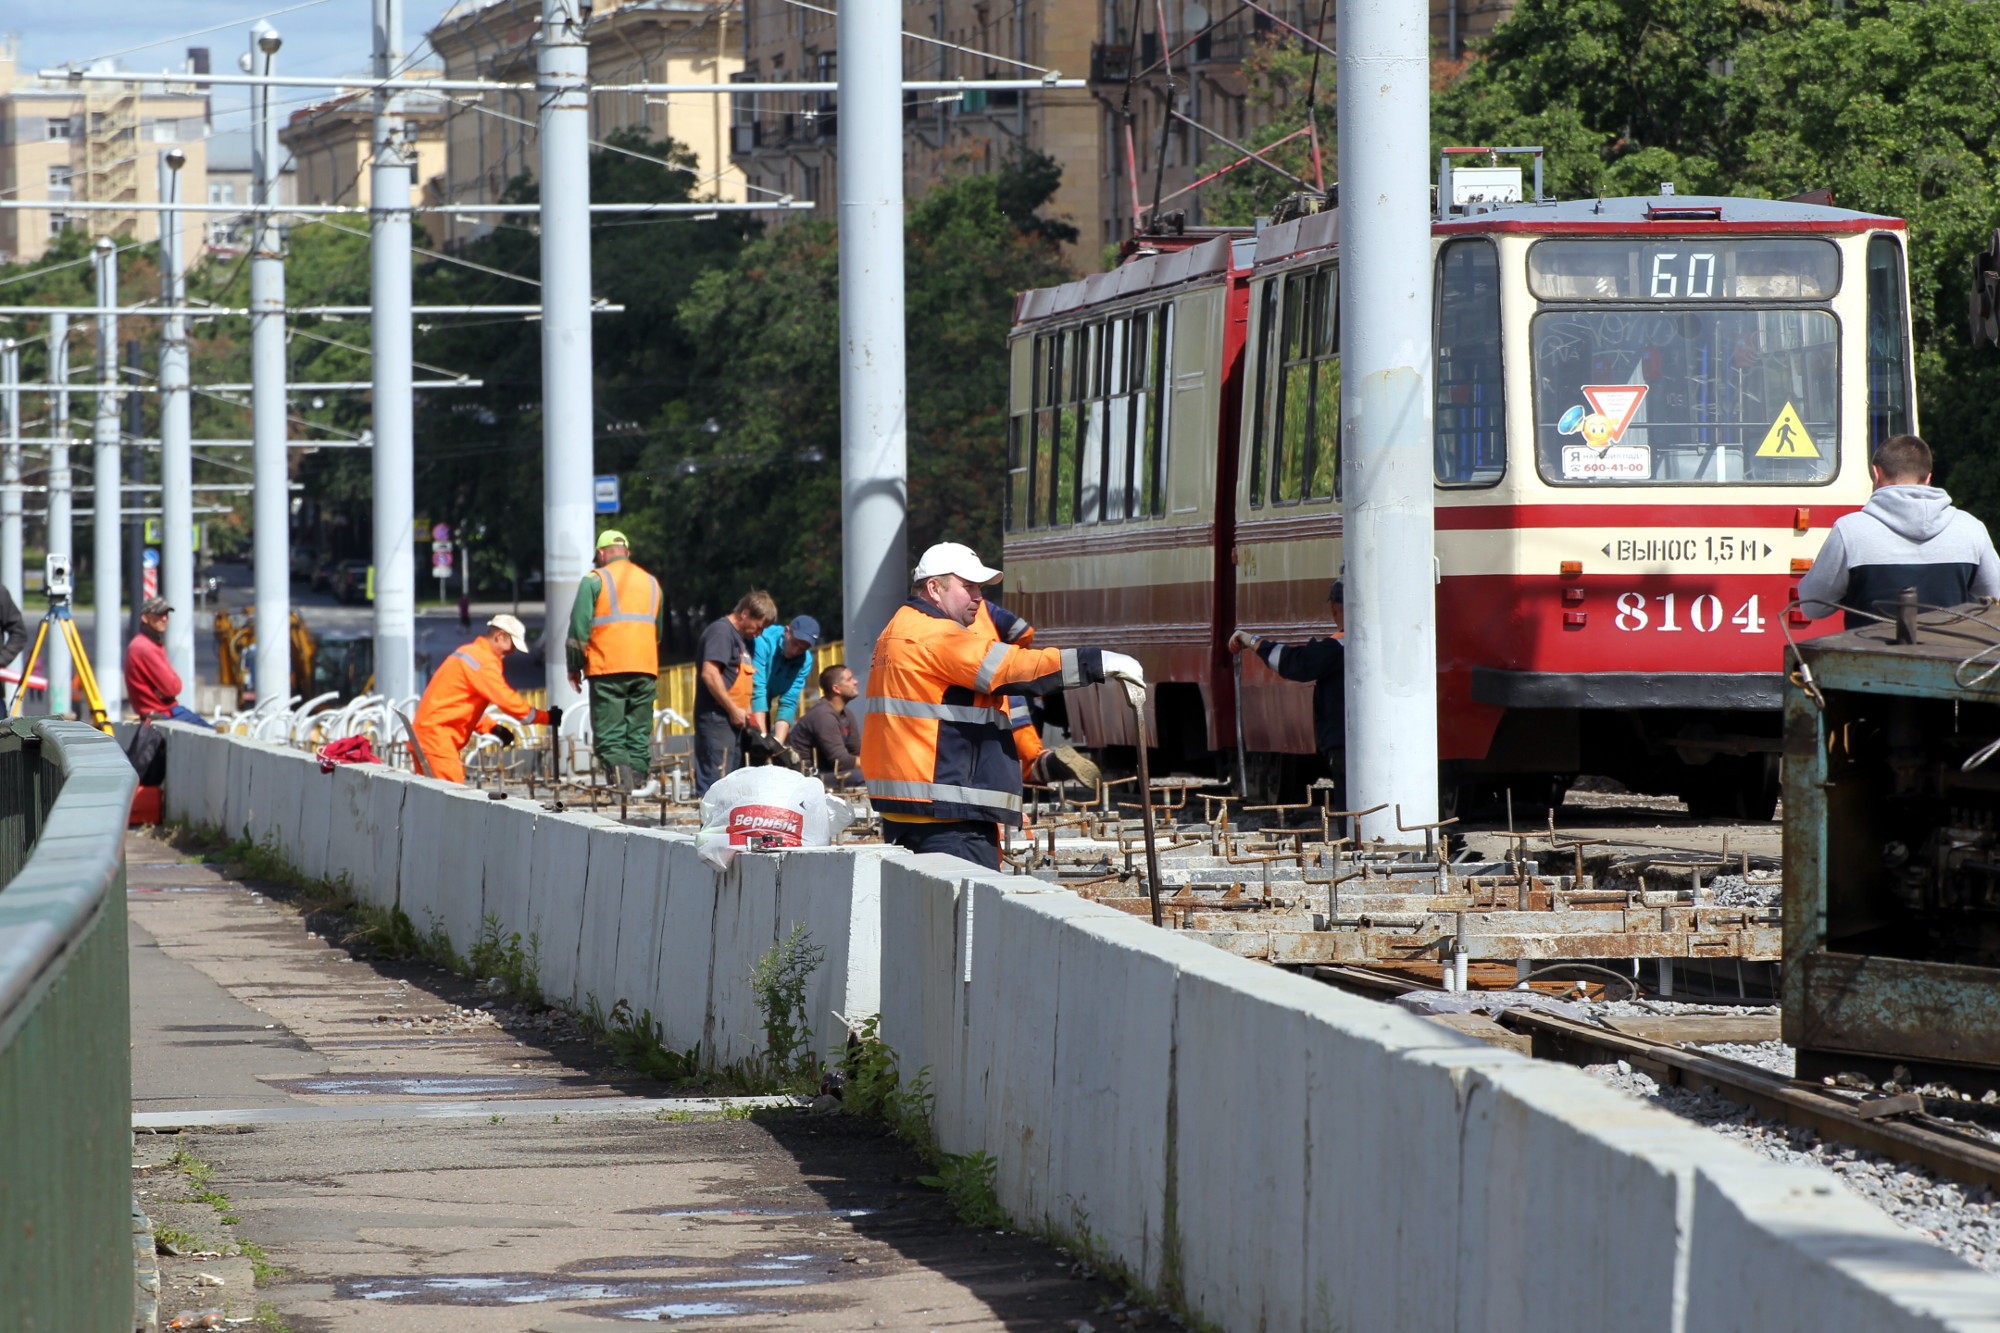 Кронштадтский путепровод трамвай 60 ремонт инфраструктуры общественный транспорт